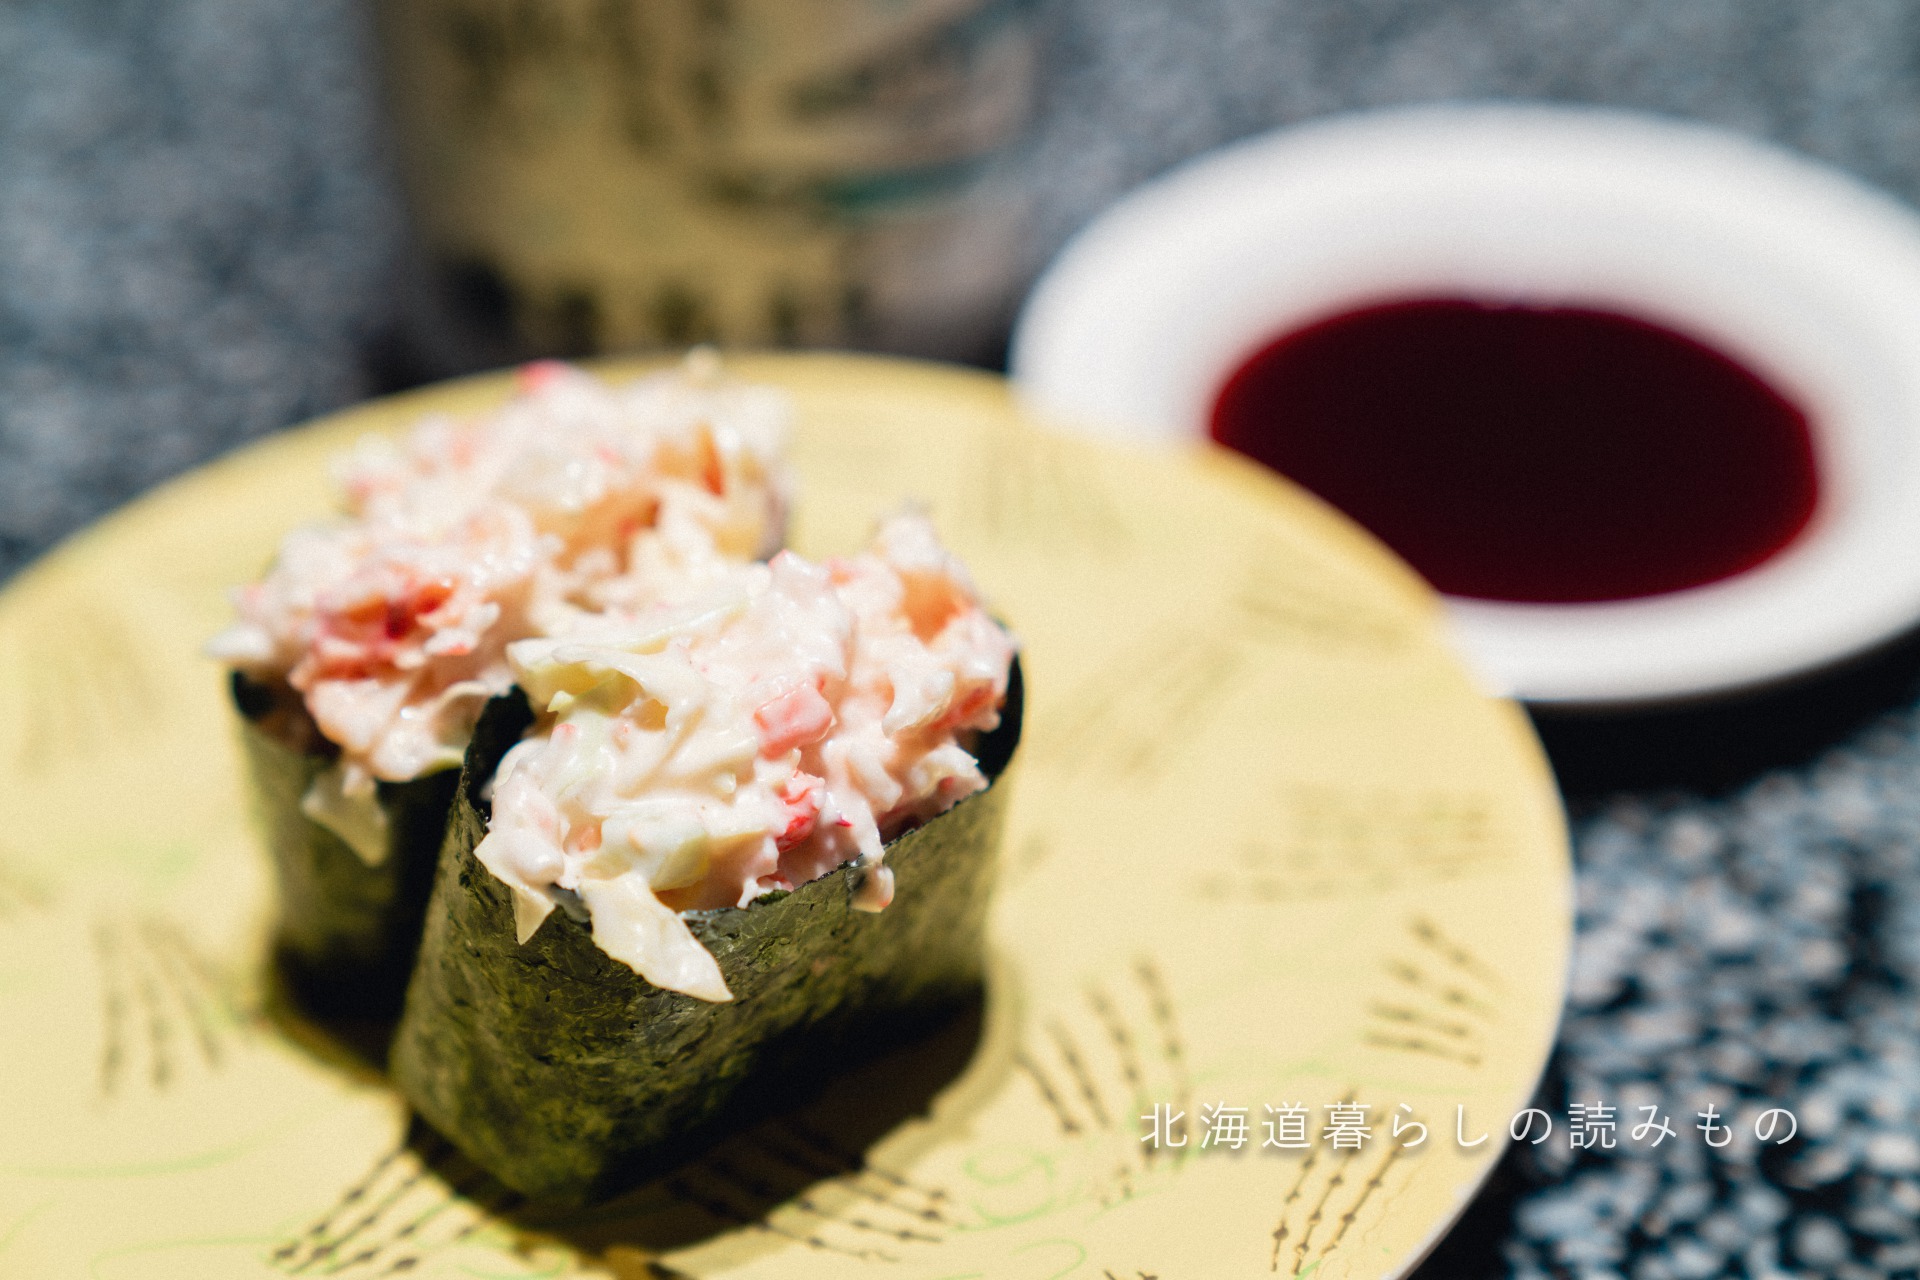 回転寿司 根室花まるのメニュー「かにサラダ」の写真